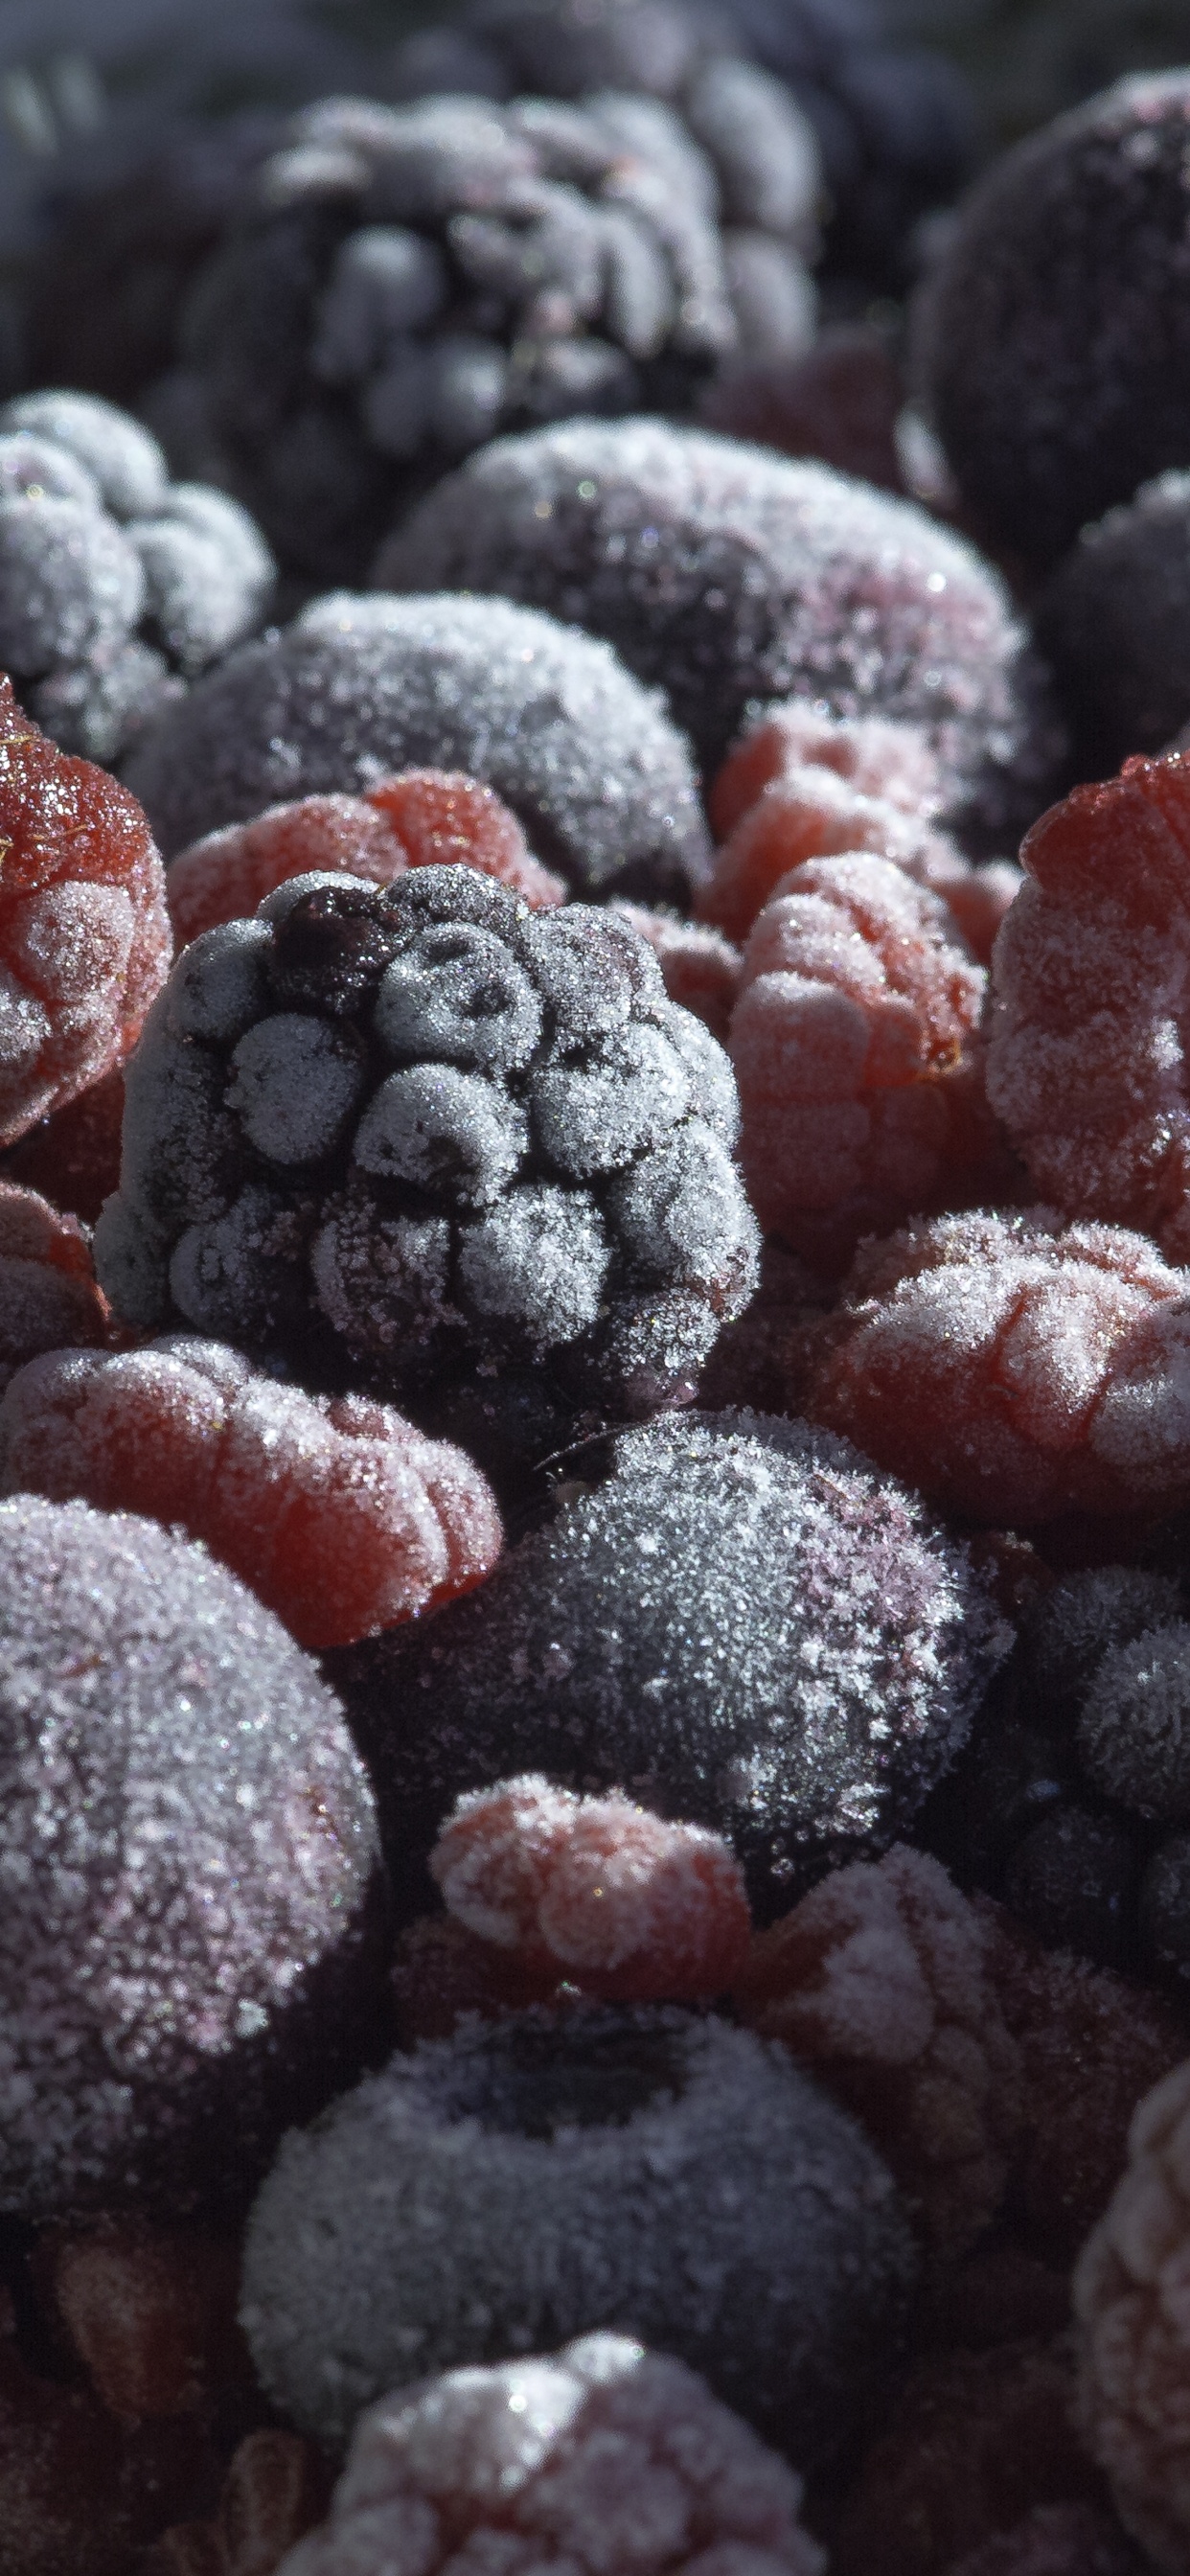 蓝莓, 树莓, 食品, 天然的食物, 甜头 壁纸 1242x2688 允许